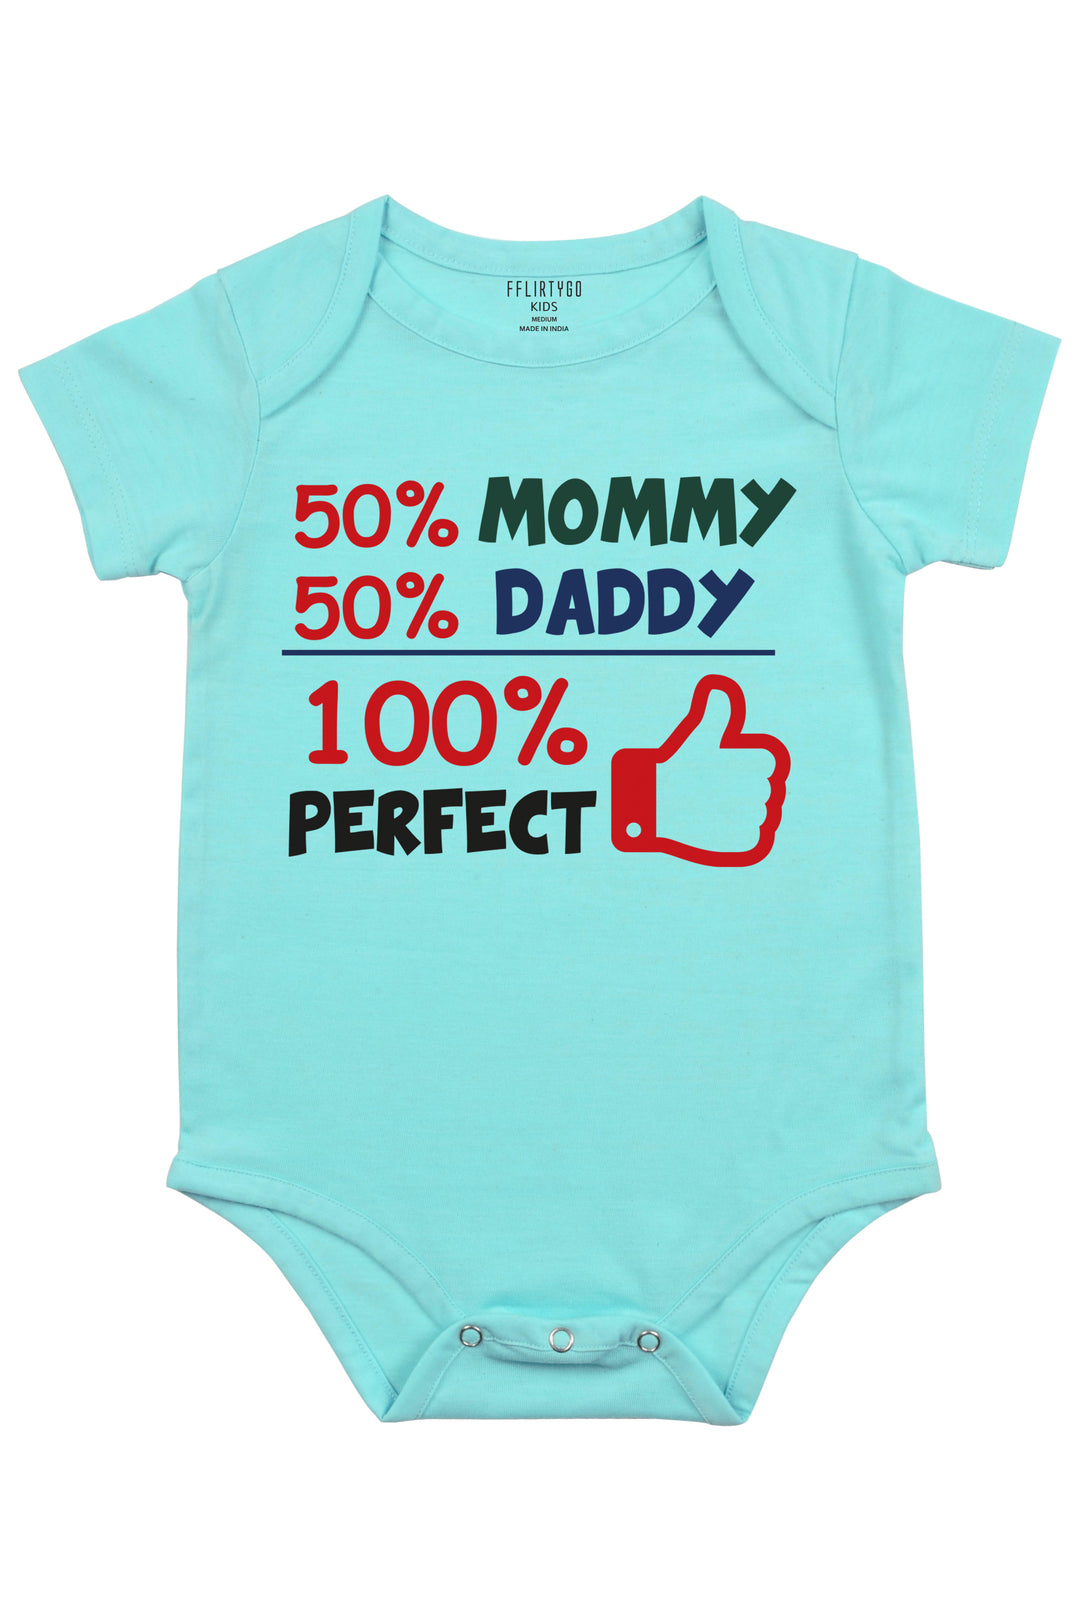 50% Mommy 50%Daddy 100% Perfect - FflirtyGo